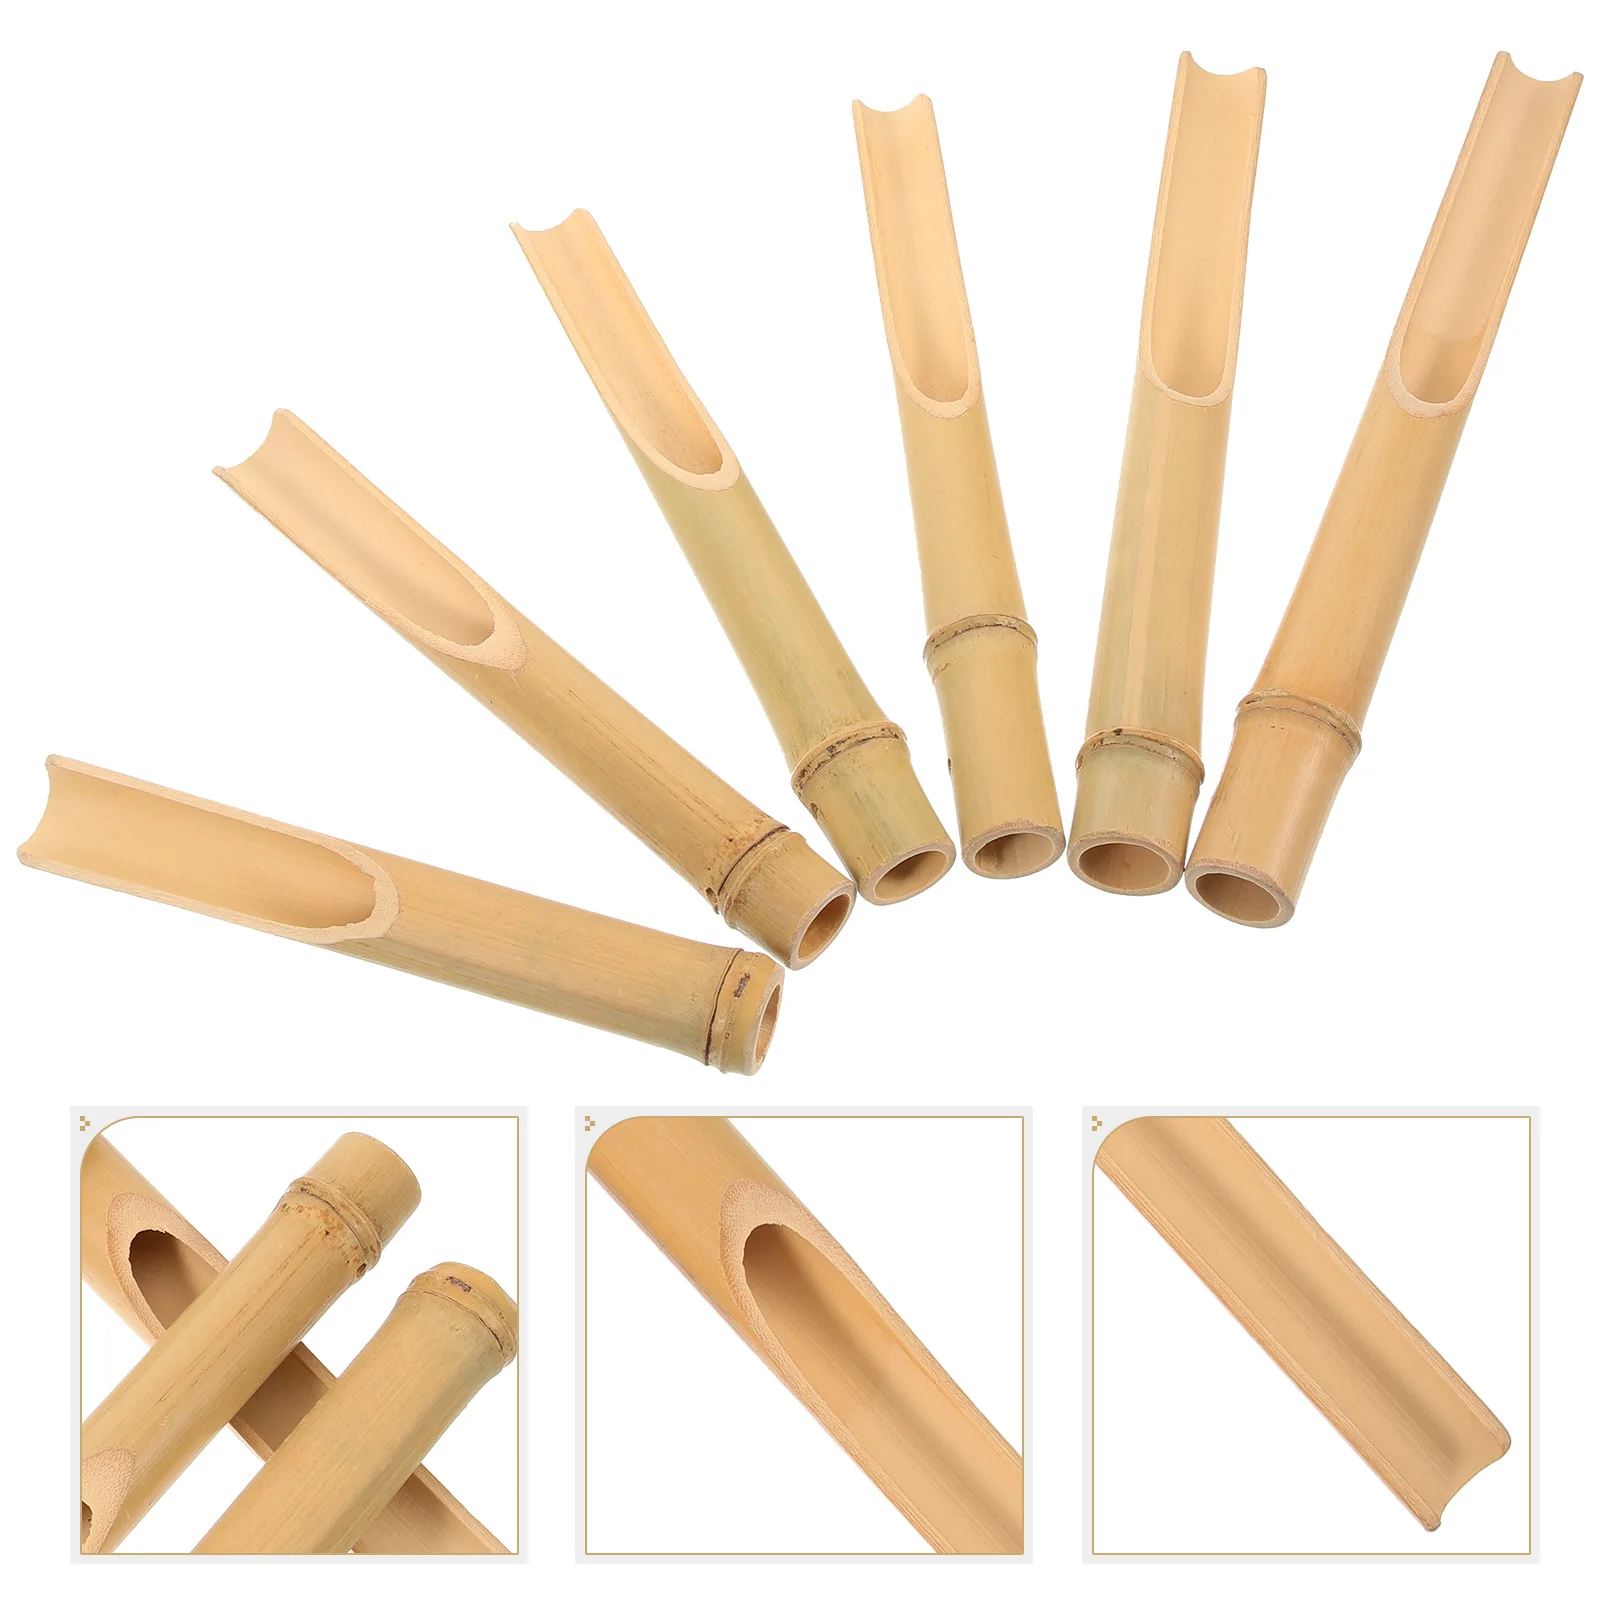 6 броя тръби за направата на звънци от бамбук със собствените си ръце